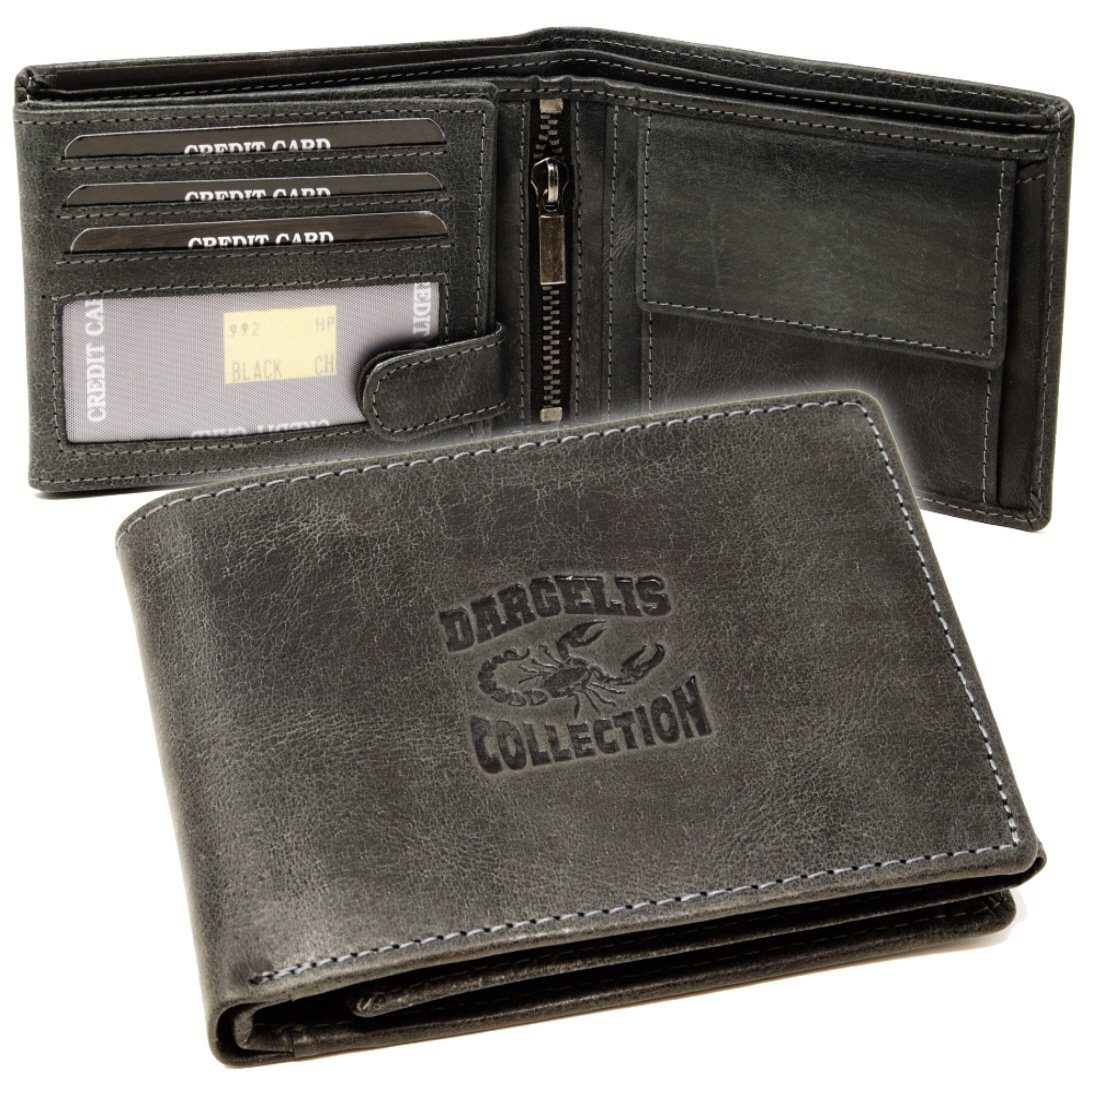 mit Portemonnaie, Brieftasche Leder Büffelleder Lederbörse Geldbörse SHG RFID Börse Schutz Männerbörse Münzfach Herren